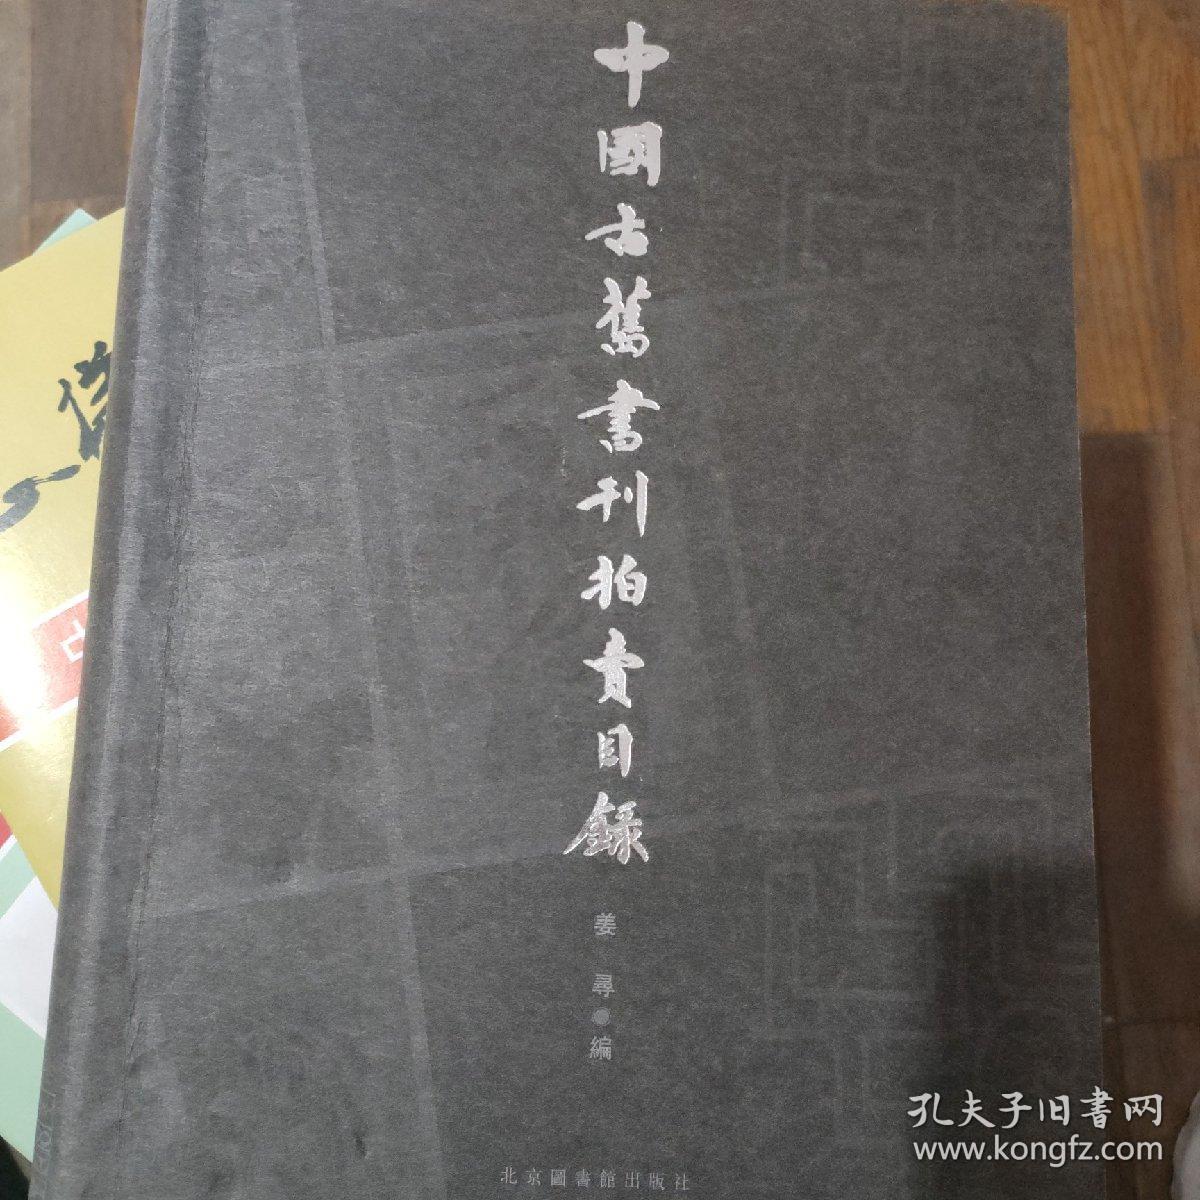 中国古旧书刊拍卖目录:1995～2001